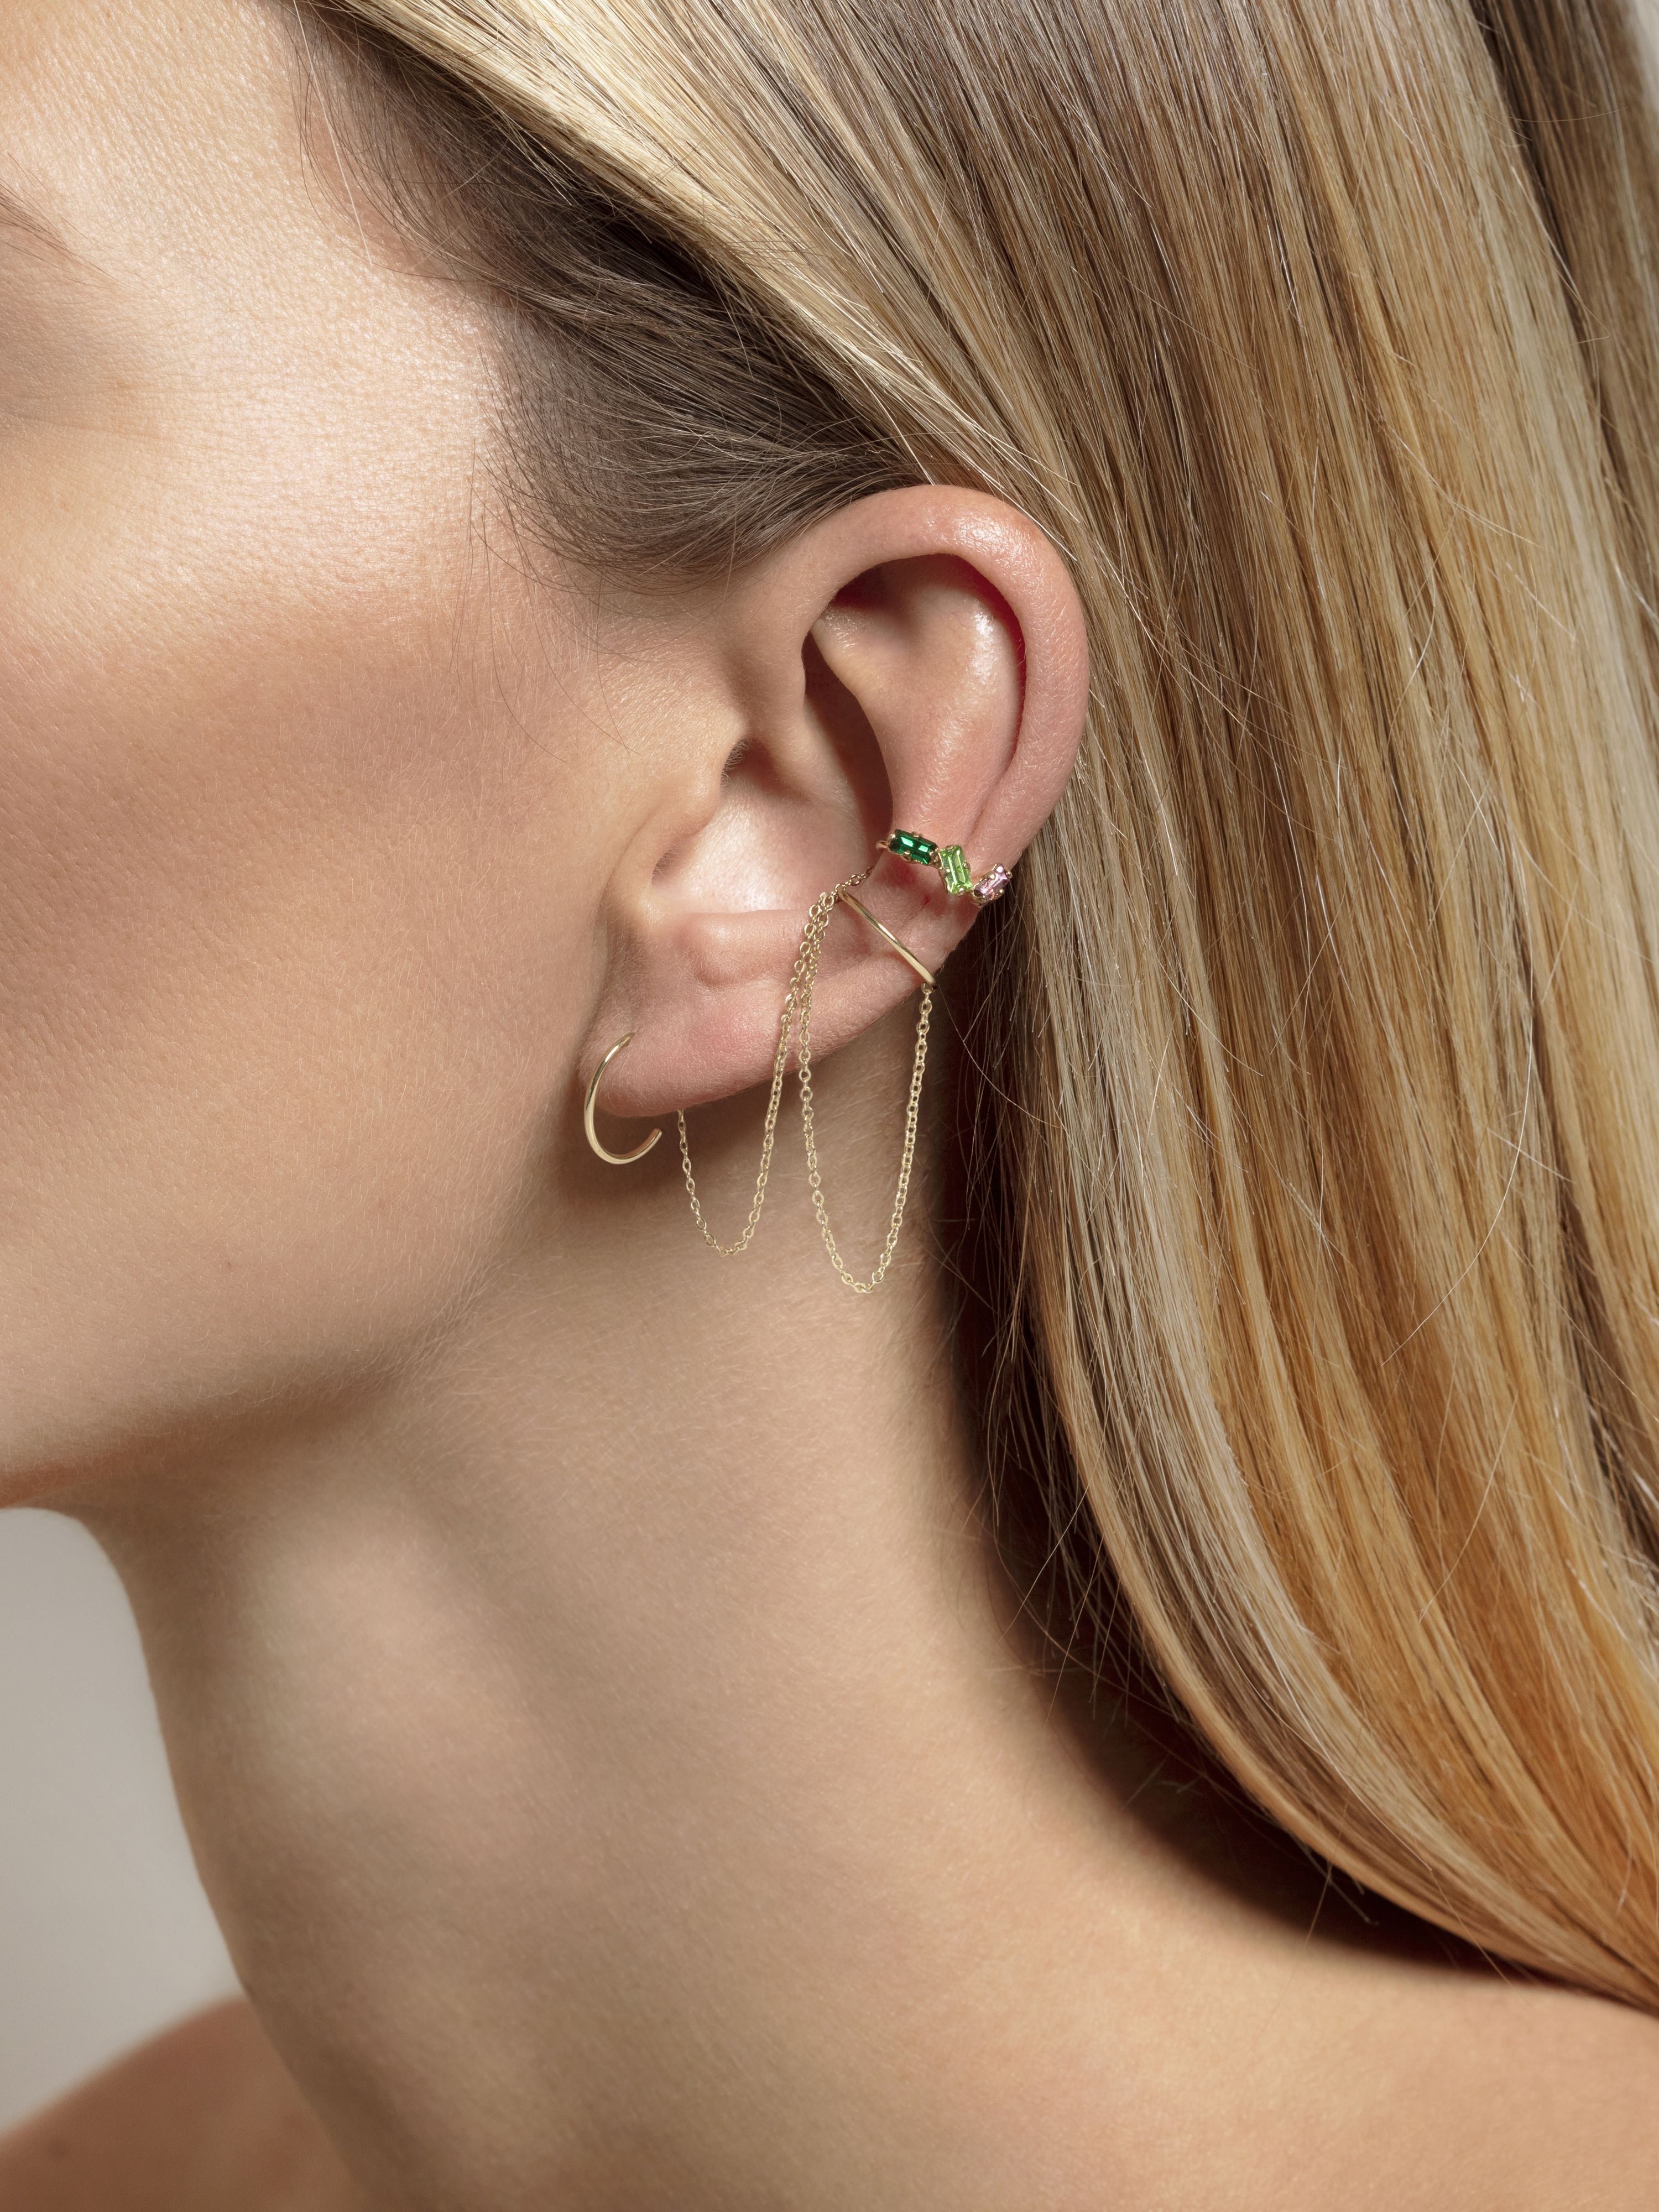 Jude earrings - April Please